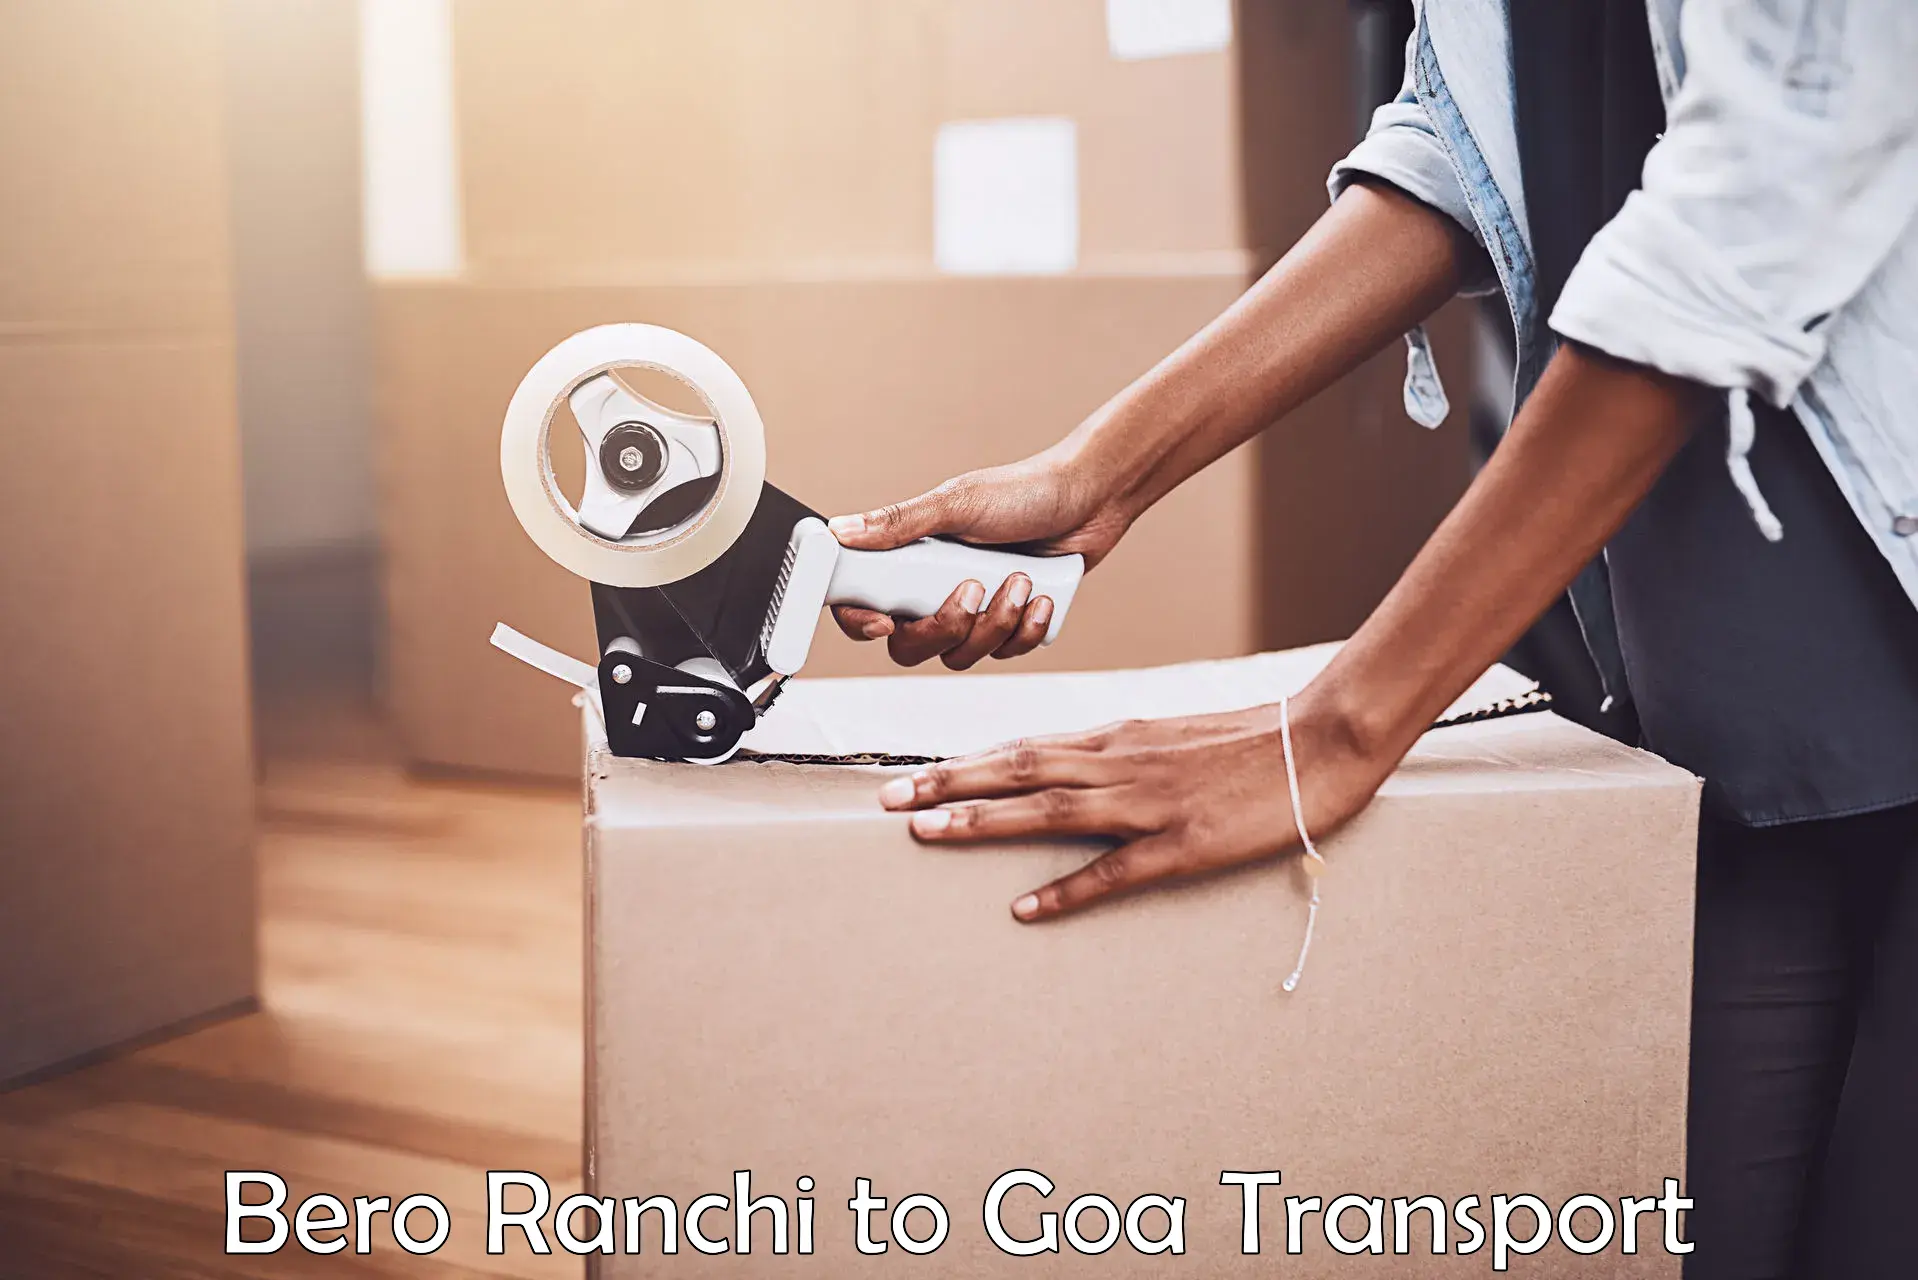 Transport in sharing Bero Ranchi to Vasco da Gama